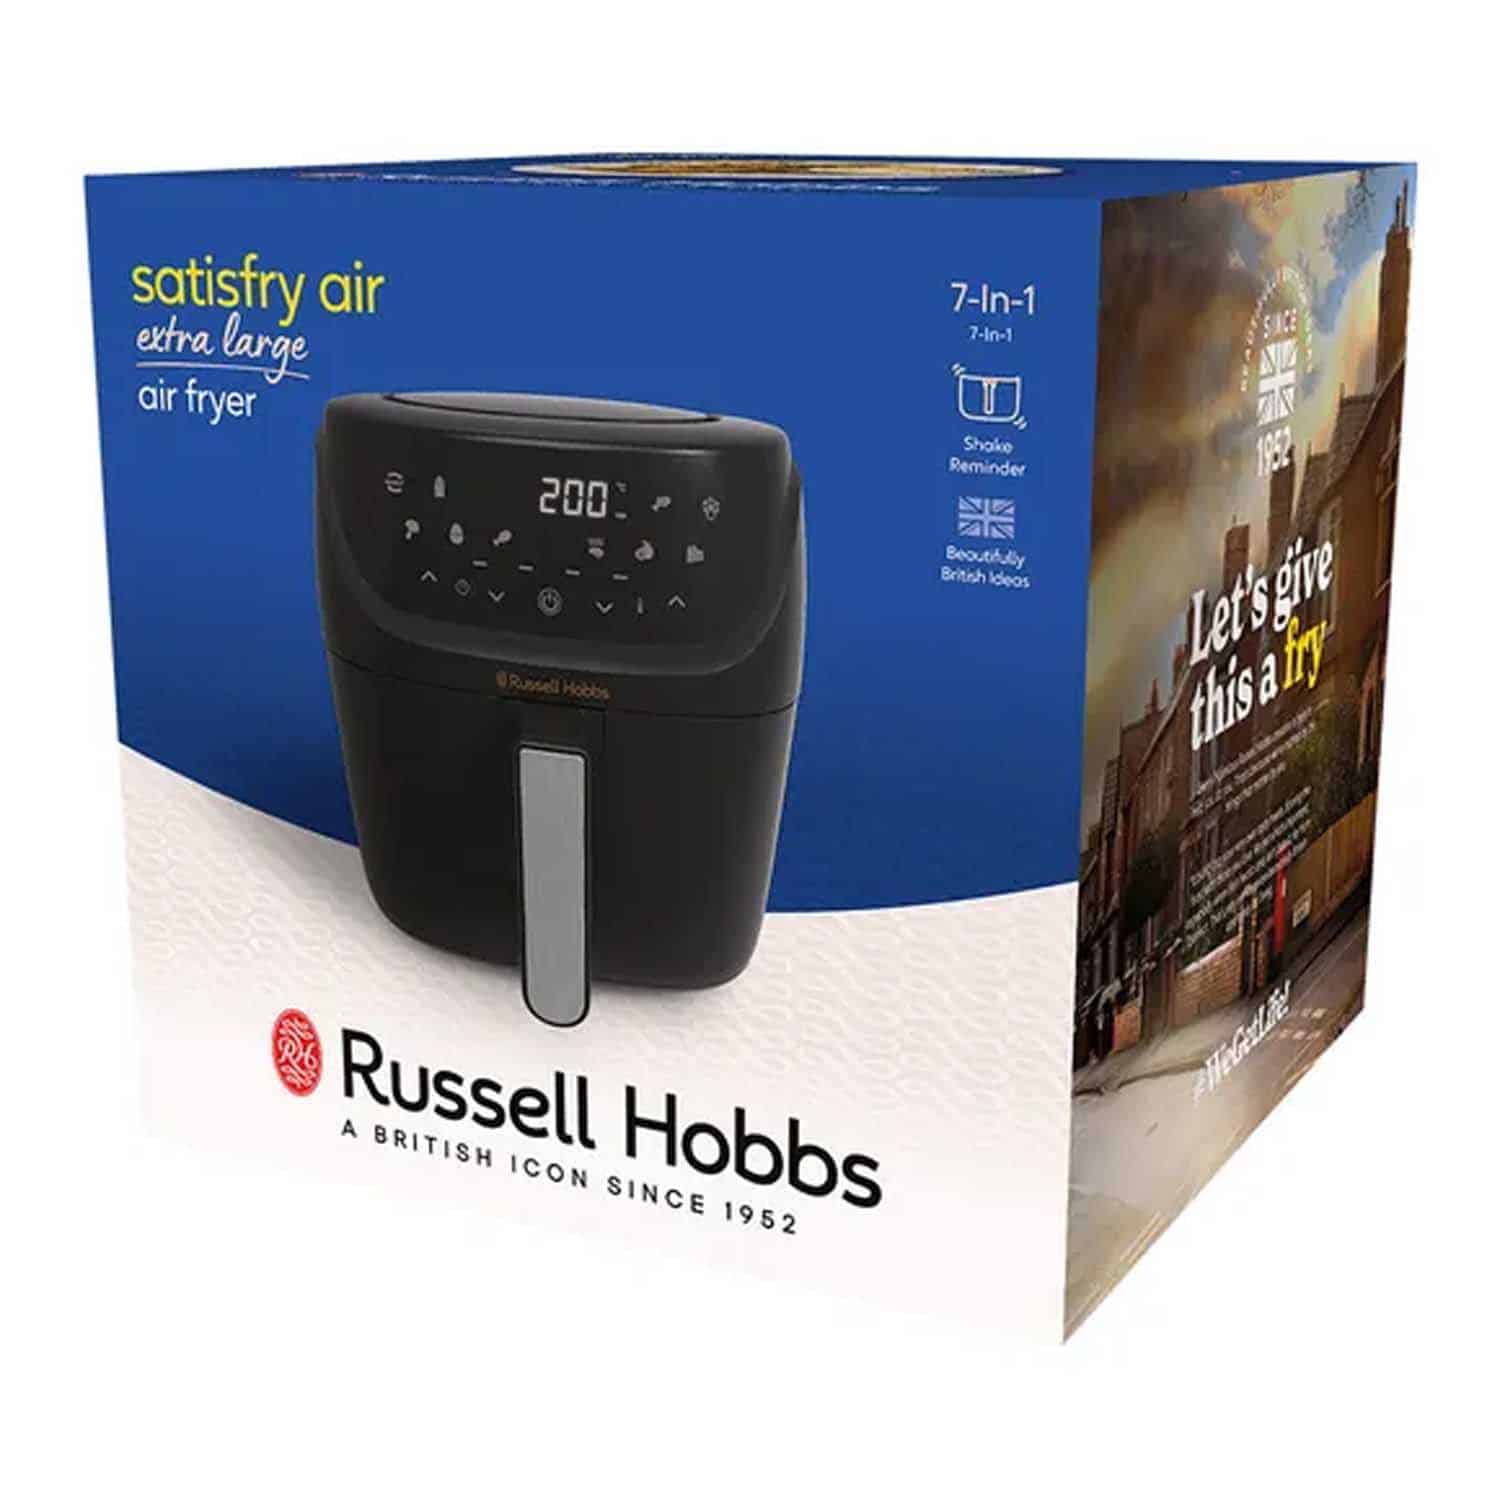 Satisfry Air fryer, Russell Hobbs, 5L Large